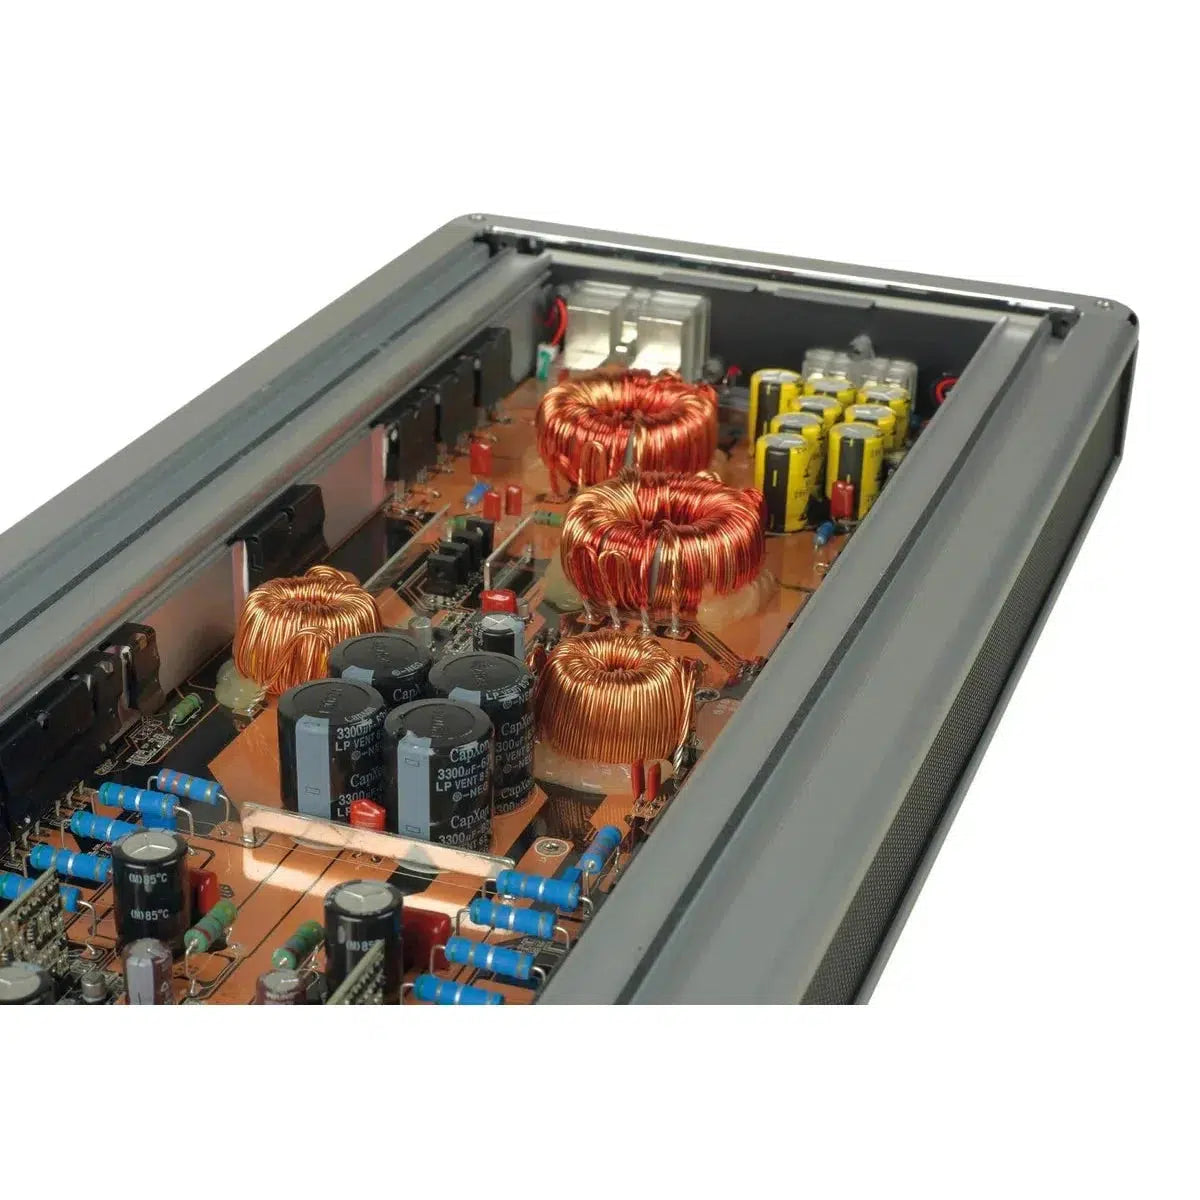 Système audio-HX-265.2-2 canaux Amplificateur-Masori.fr